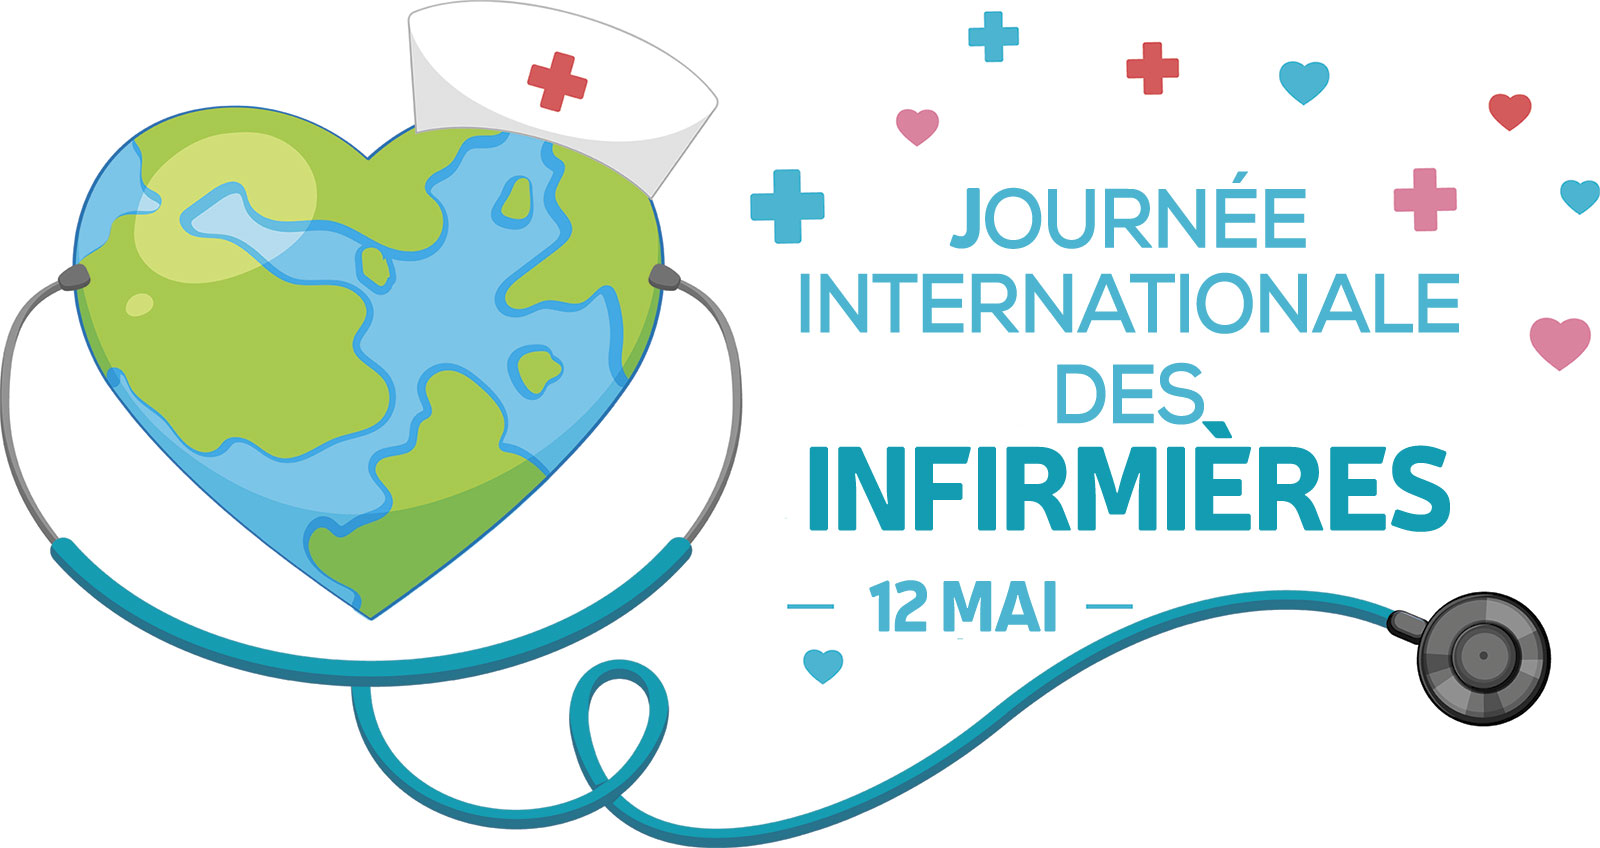 Journée internationale des infirmières 2021 | Convergence Infirmière | Syndicat infirmière